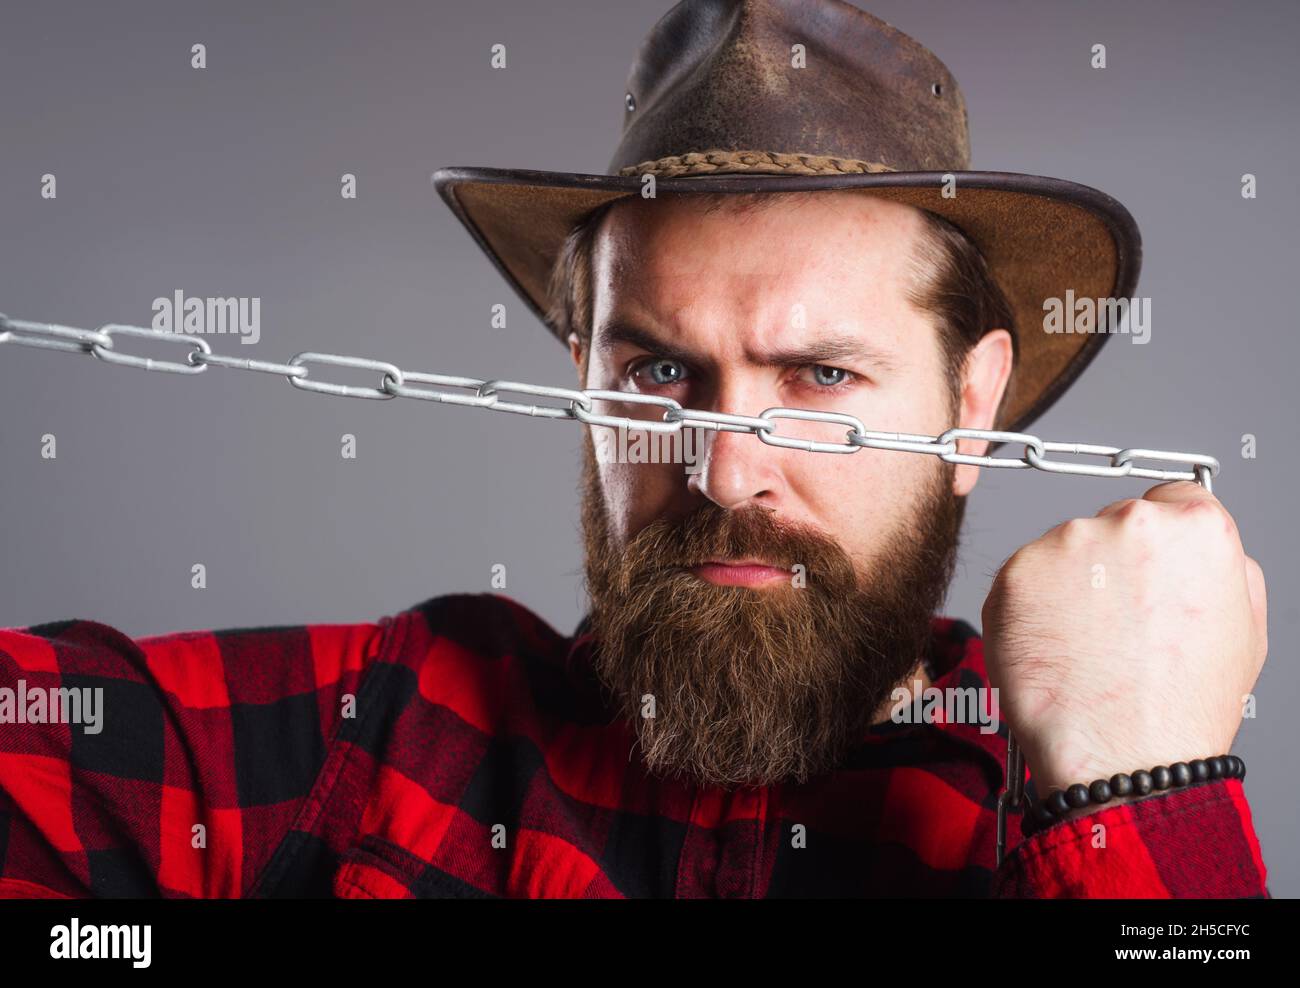 Homme brutal dans chapeau de cow-boy avec chaîne.Homme barbu sérieux dans une chemise à carreaux essayant de briser les chaînes métalliques. Banque D'Images